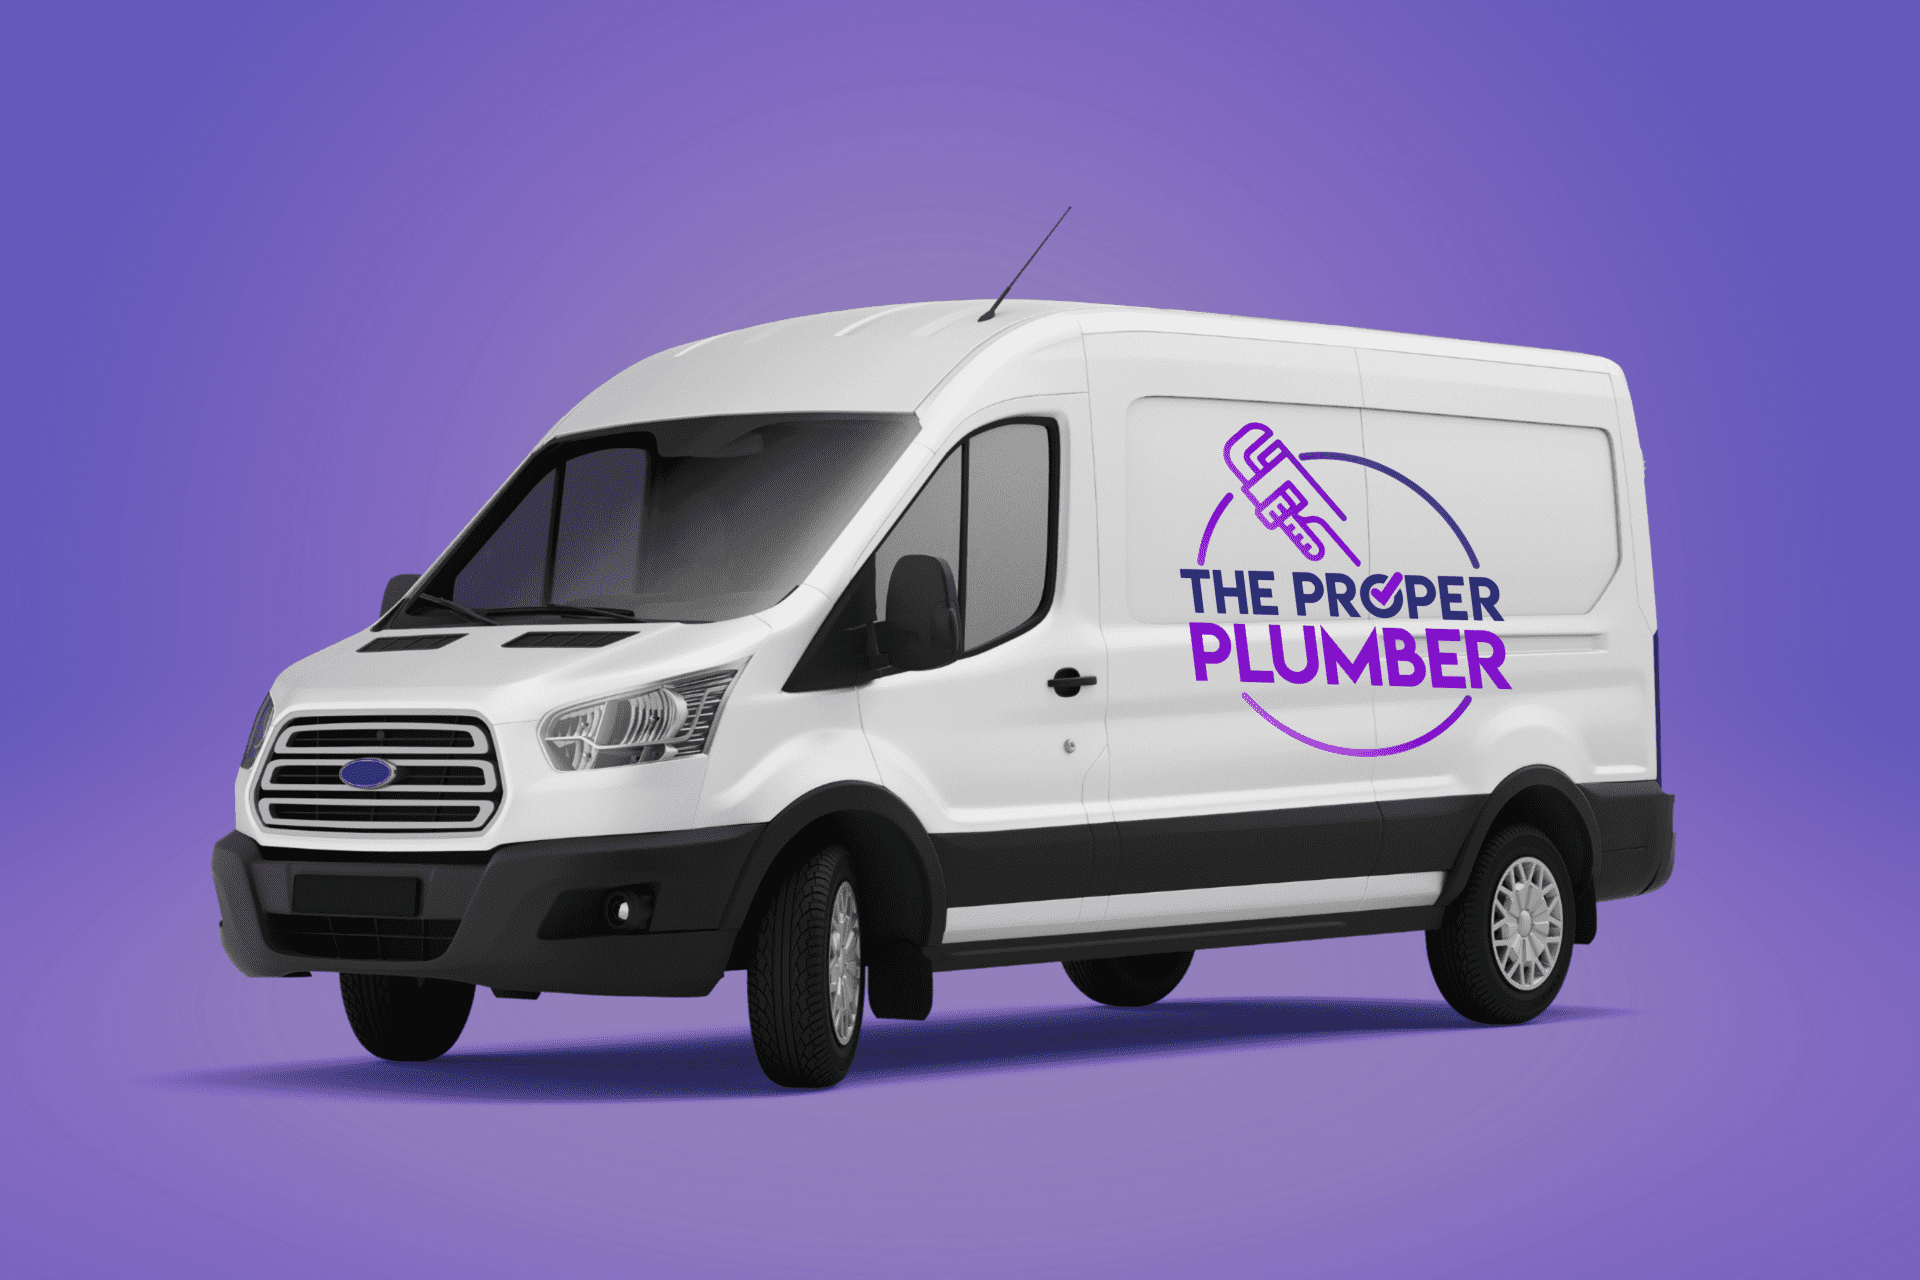 The Proper Plumber Van